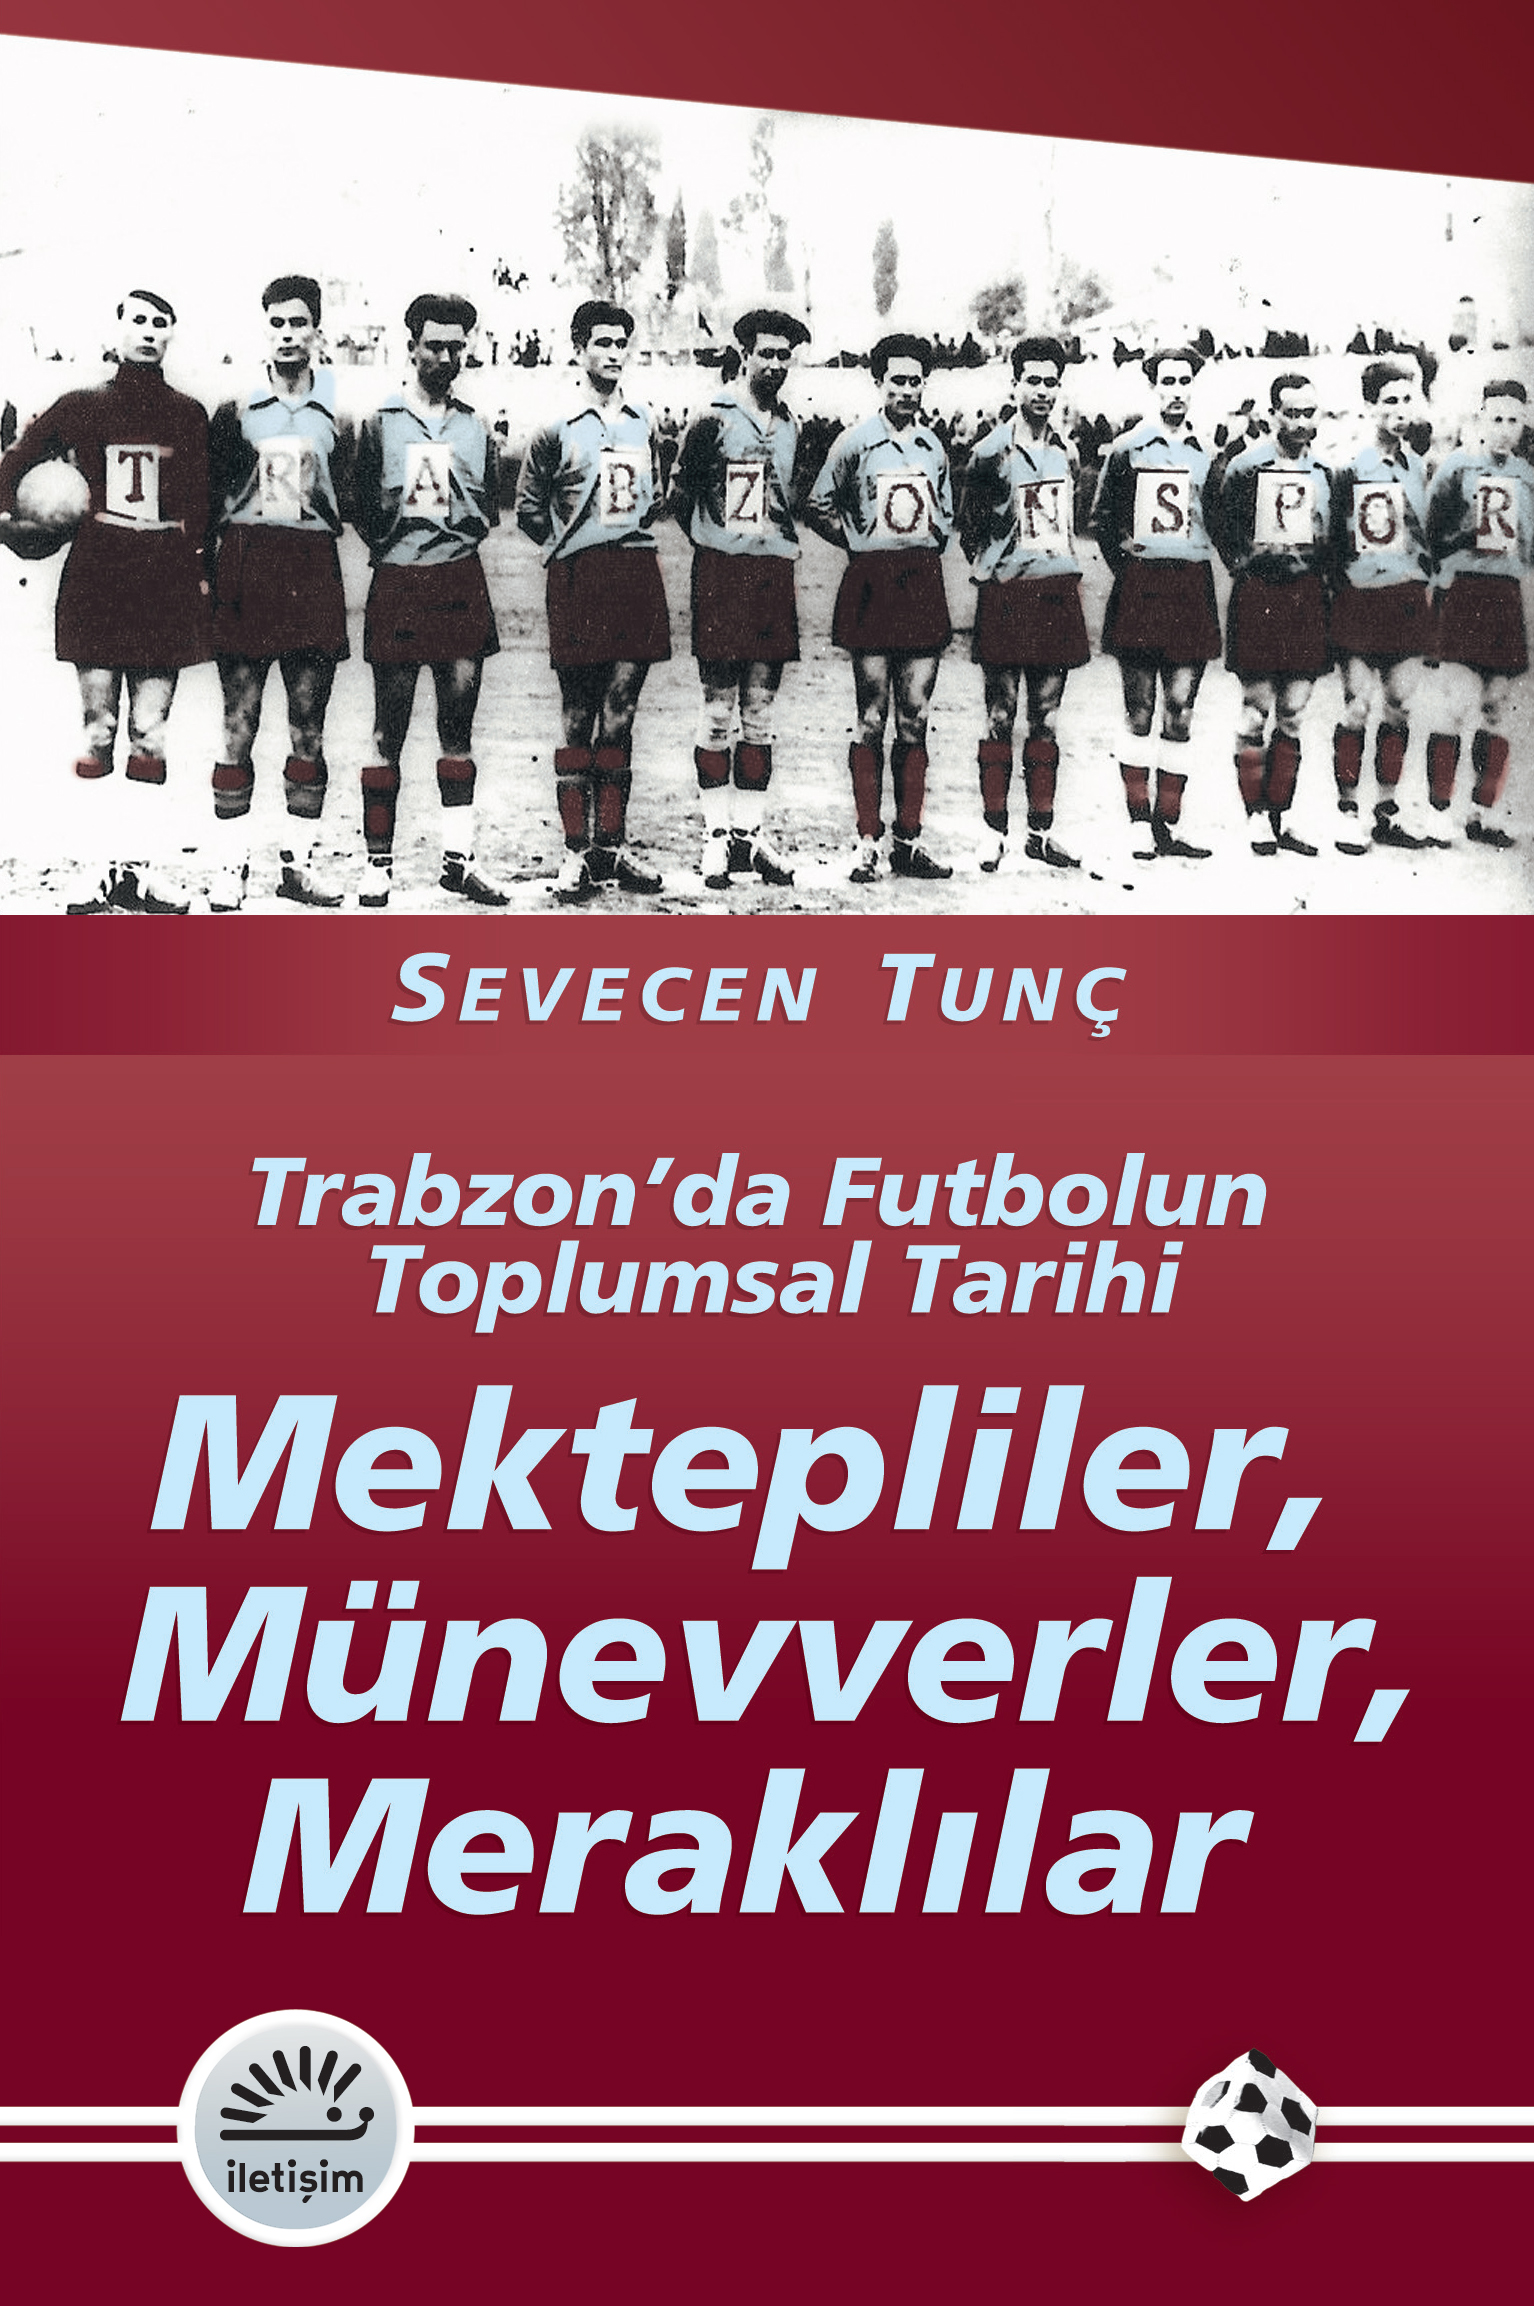 Mektepliler Münevverler Meraklılar Trabzon'da Futbolun Toplumsal Tarihi